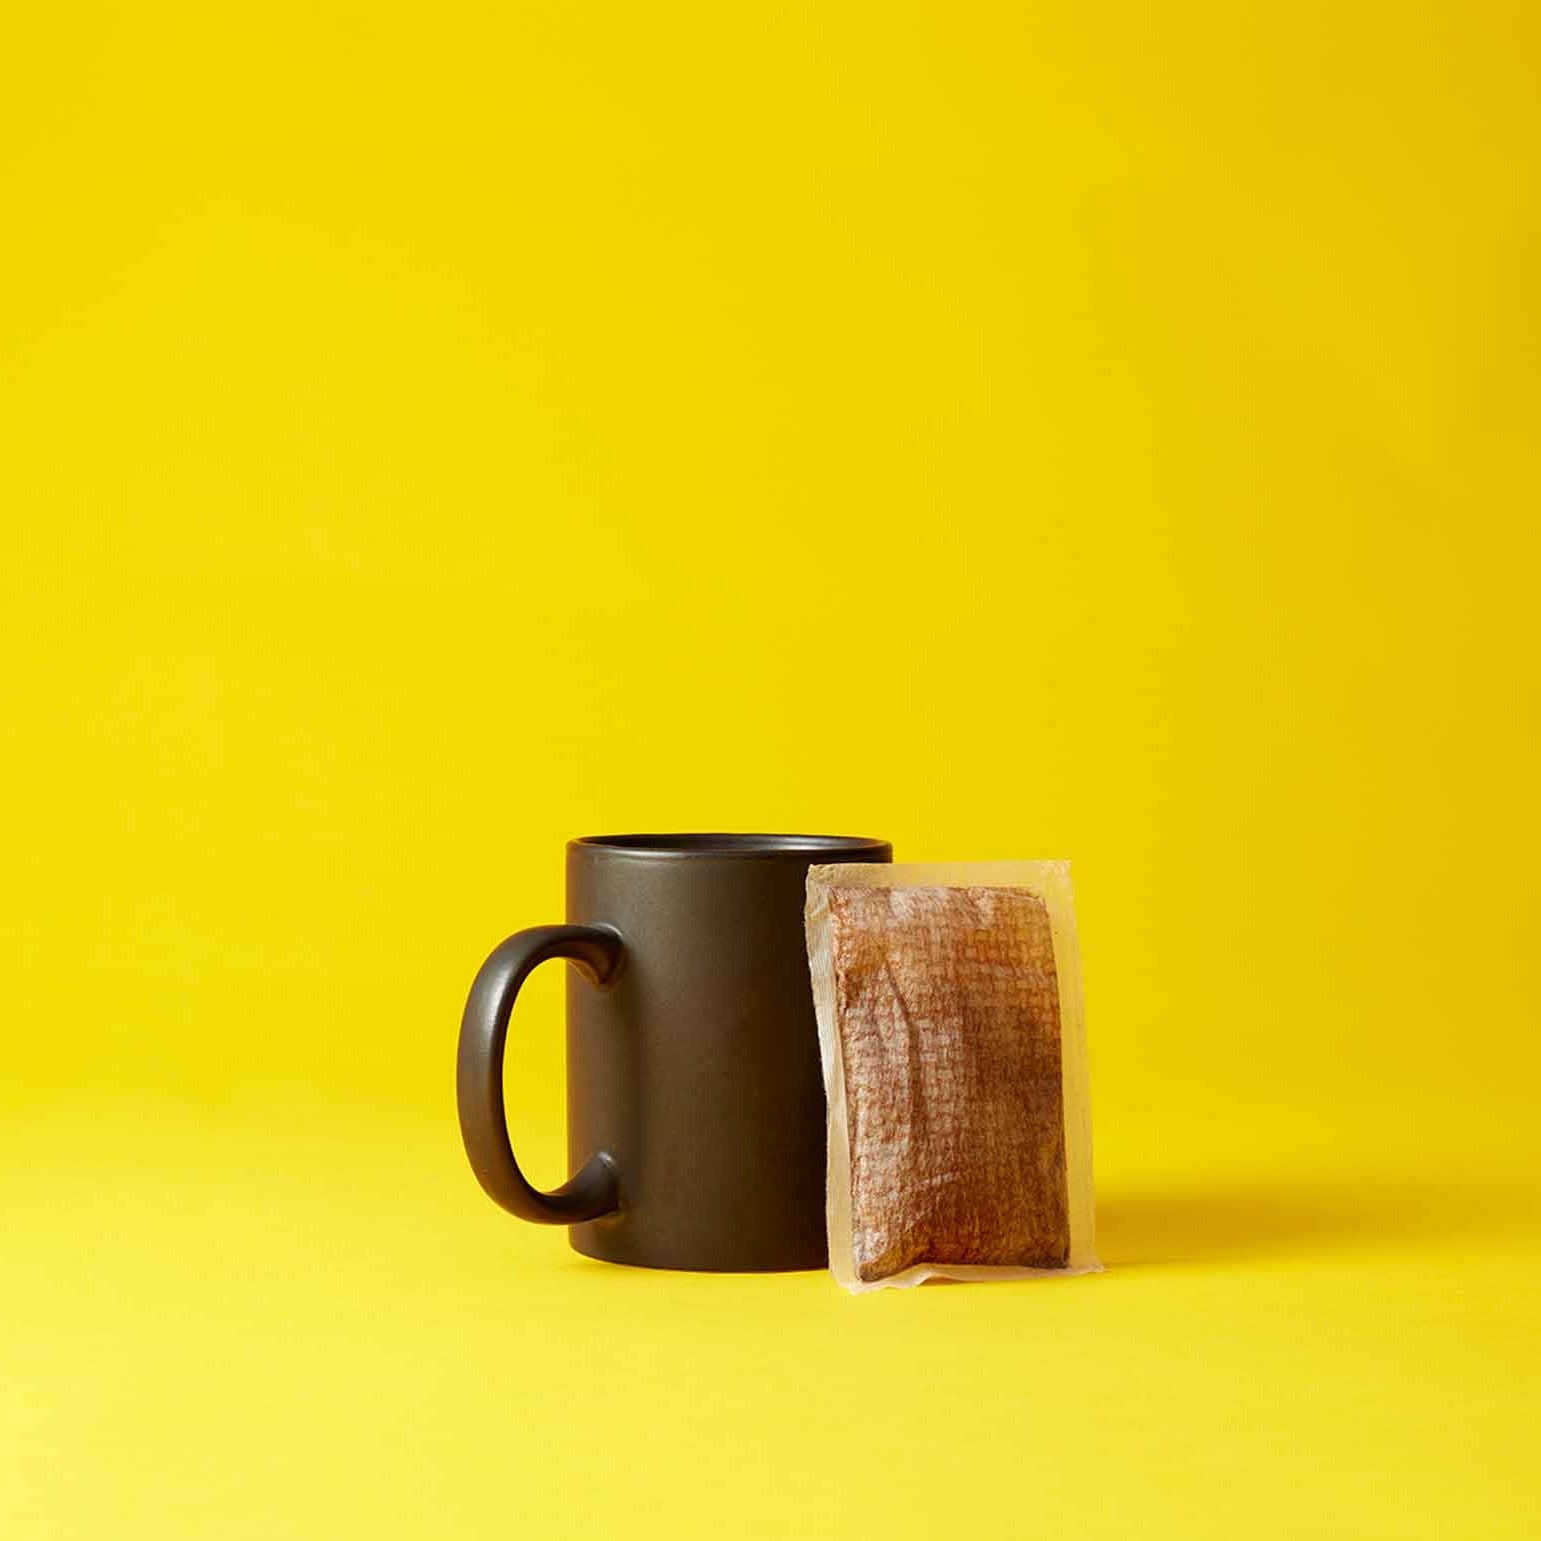 Black mug and coffee bag